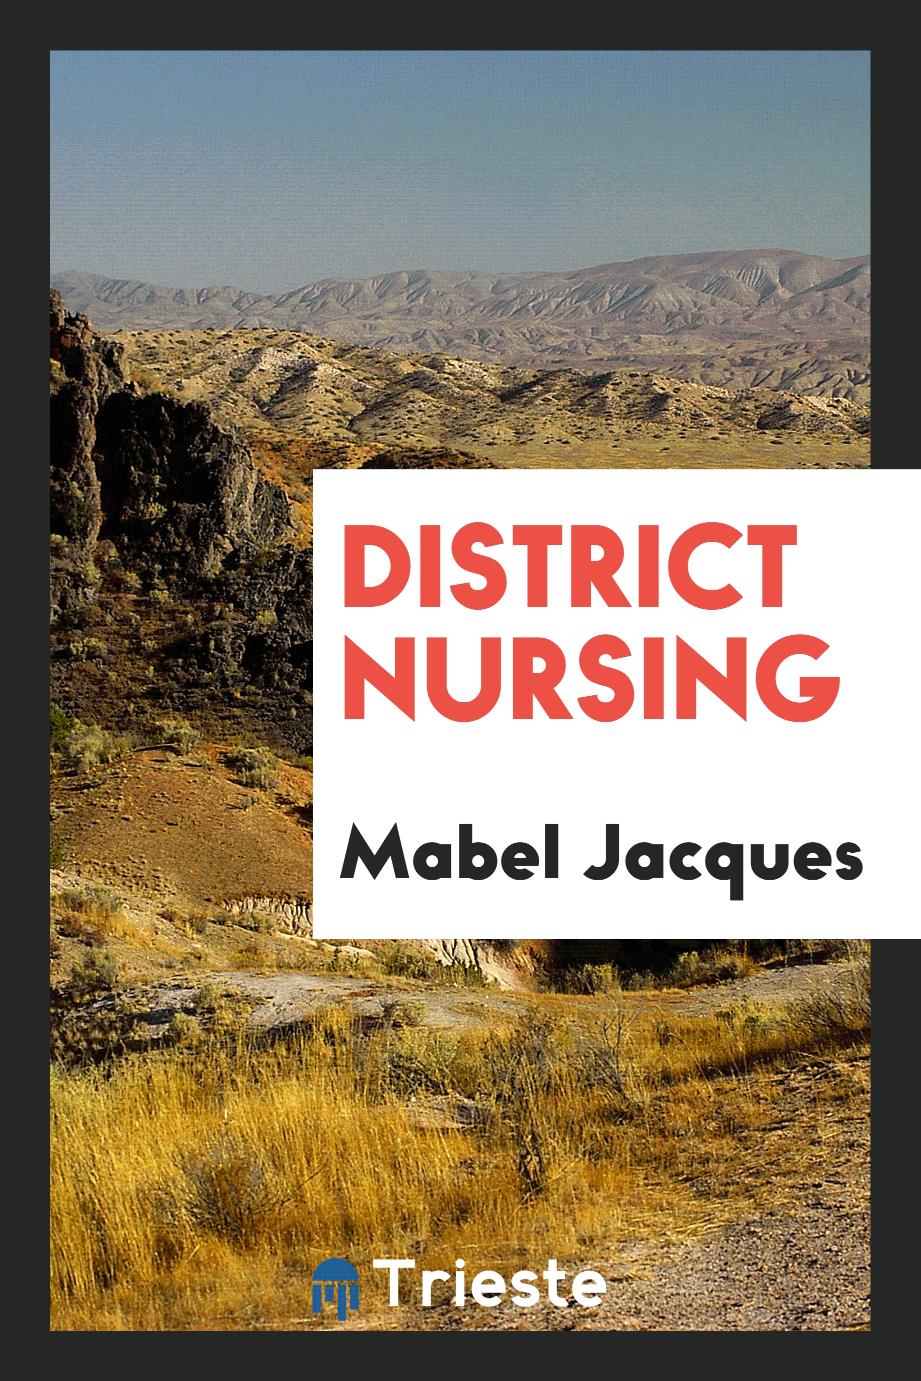 Mabel Jacques - District Nursing